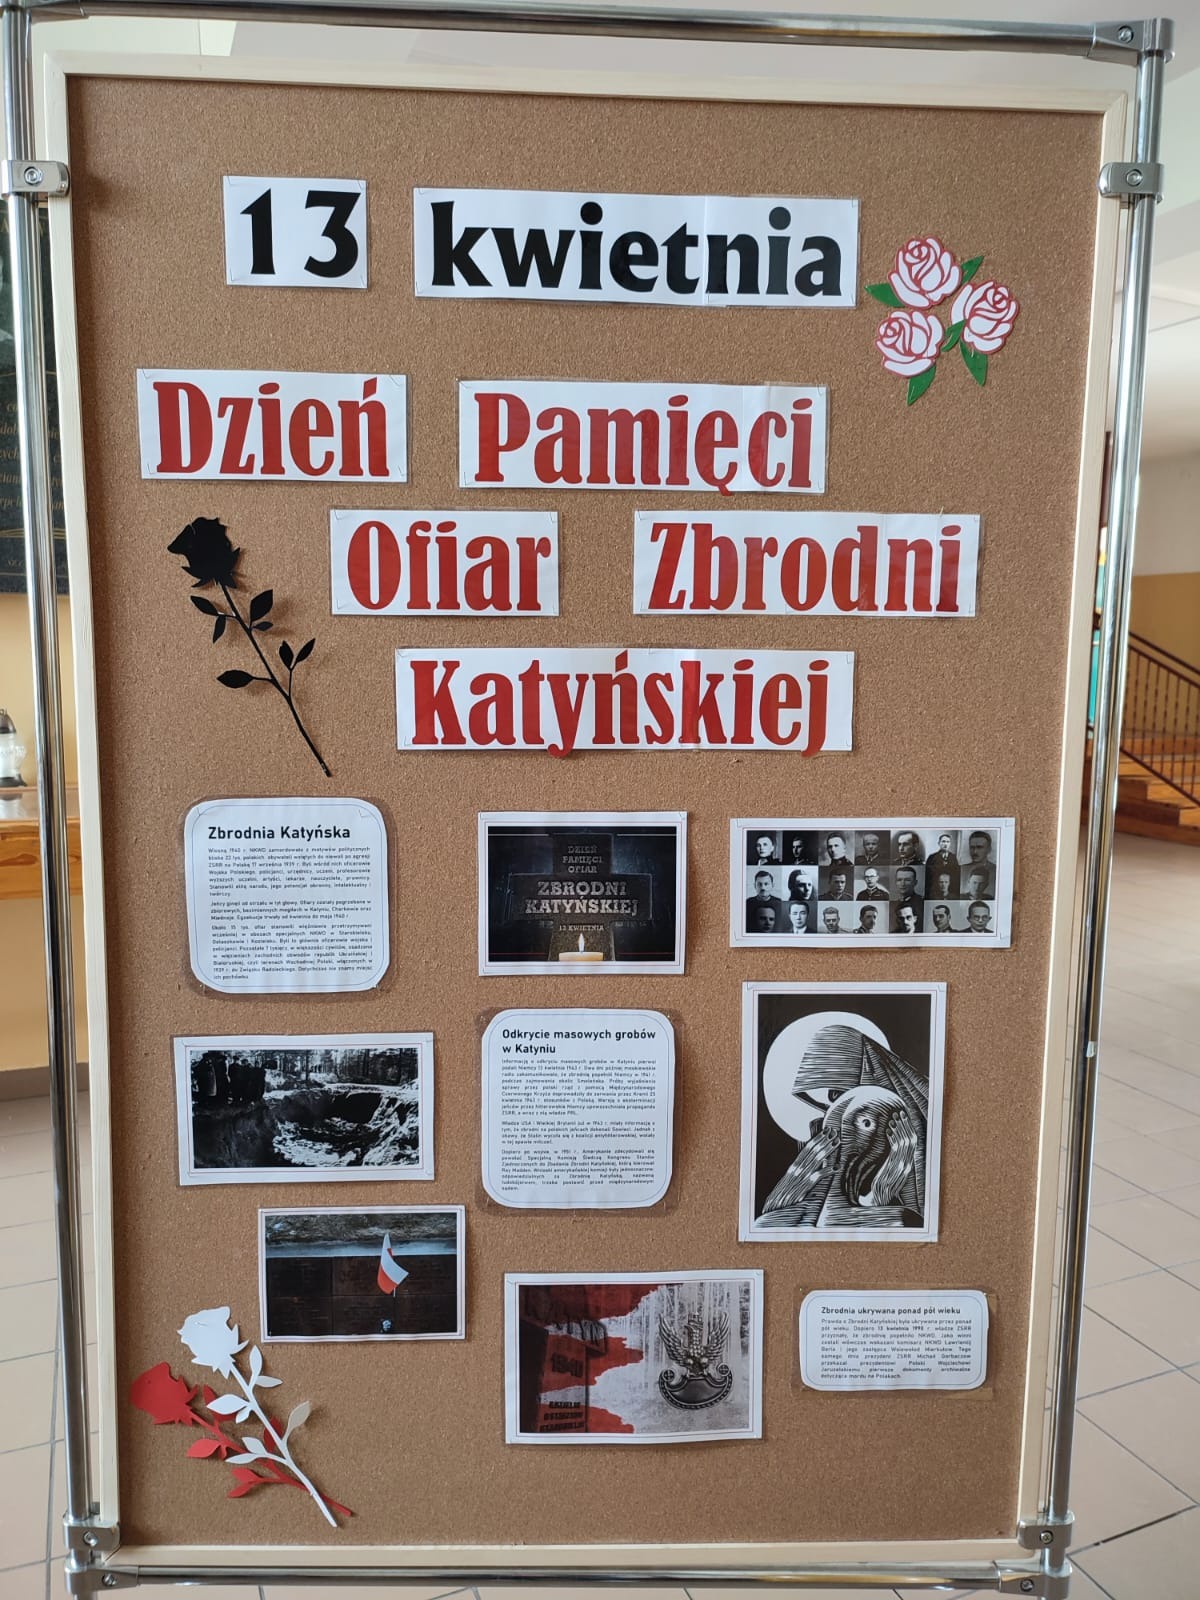 13 kwietnia - Dzień Pamięci Ofiar Zbrodni Katyńskiej  - Obrazek 3